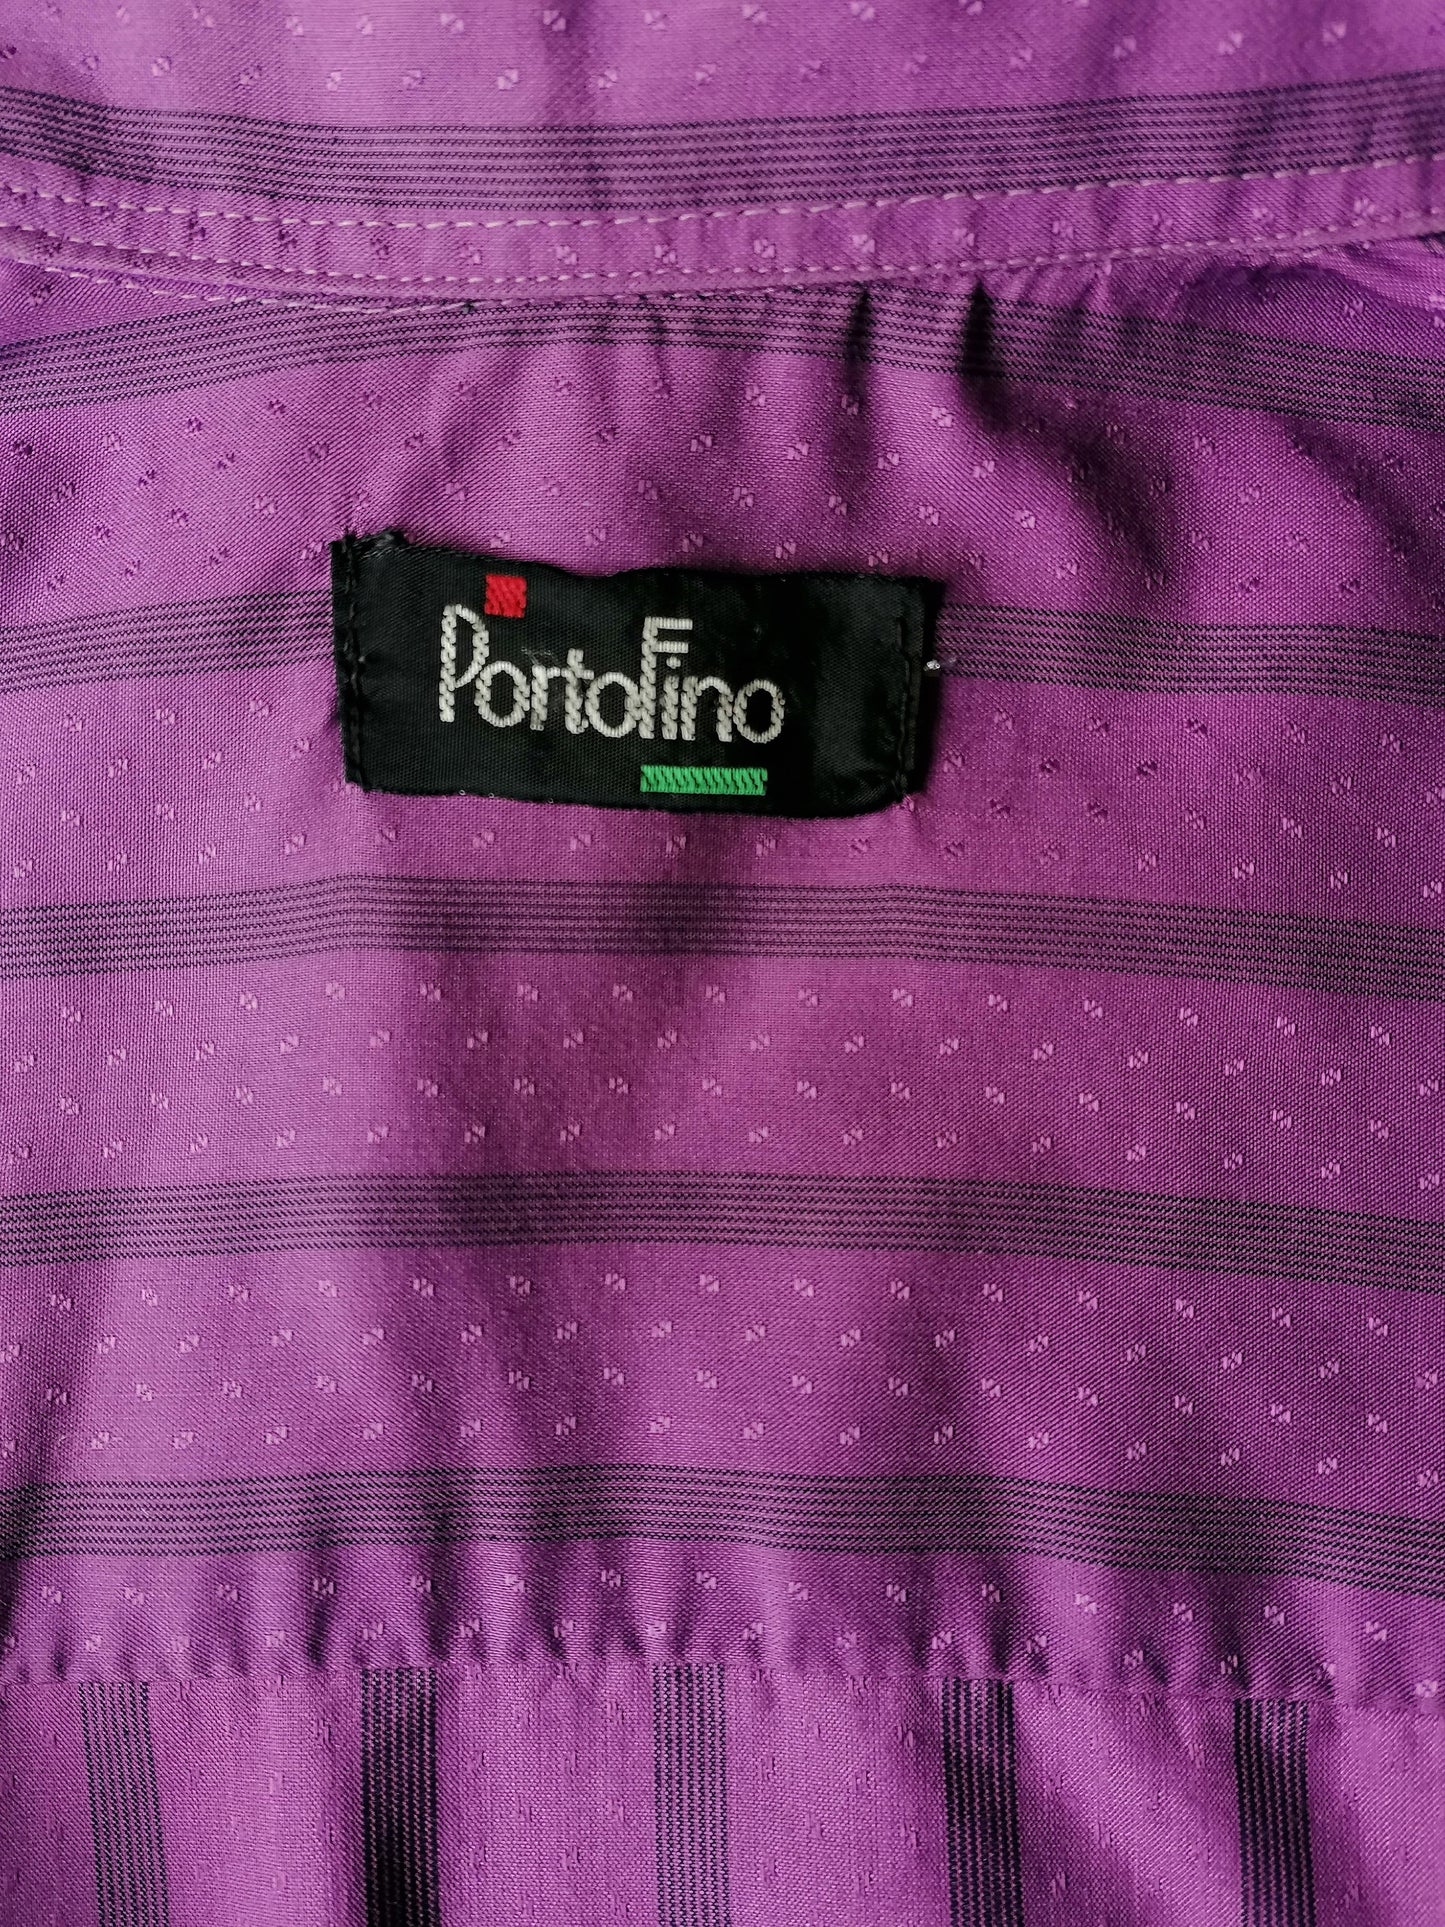 Vintage Portofino overhemd. Paars gestreepte print. Maat M.